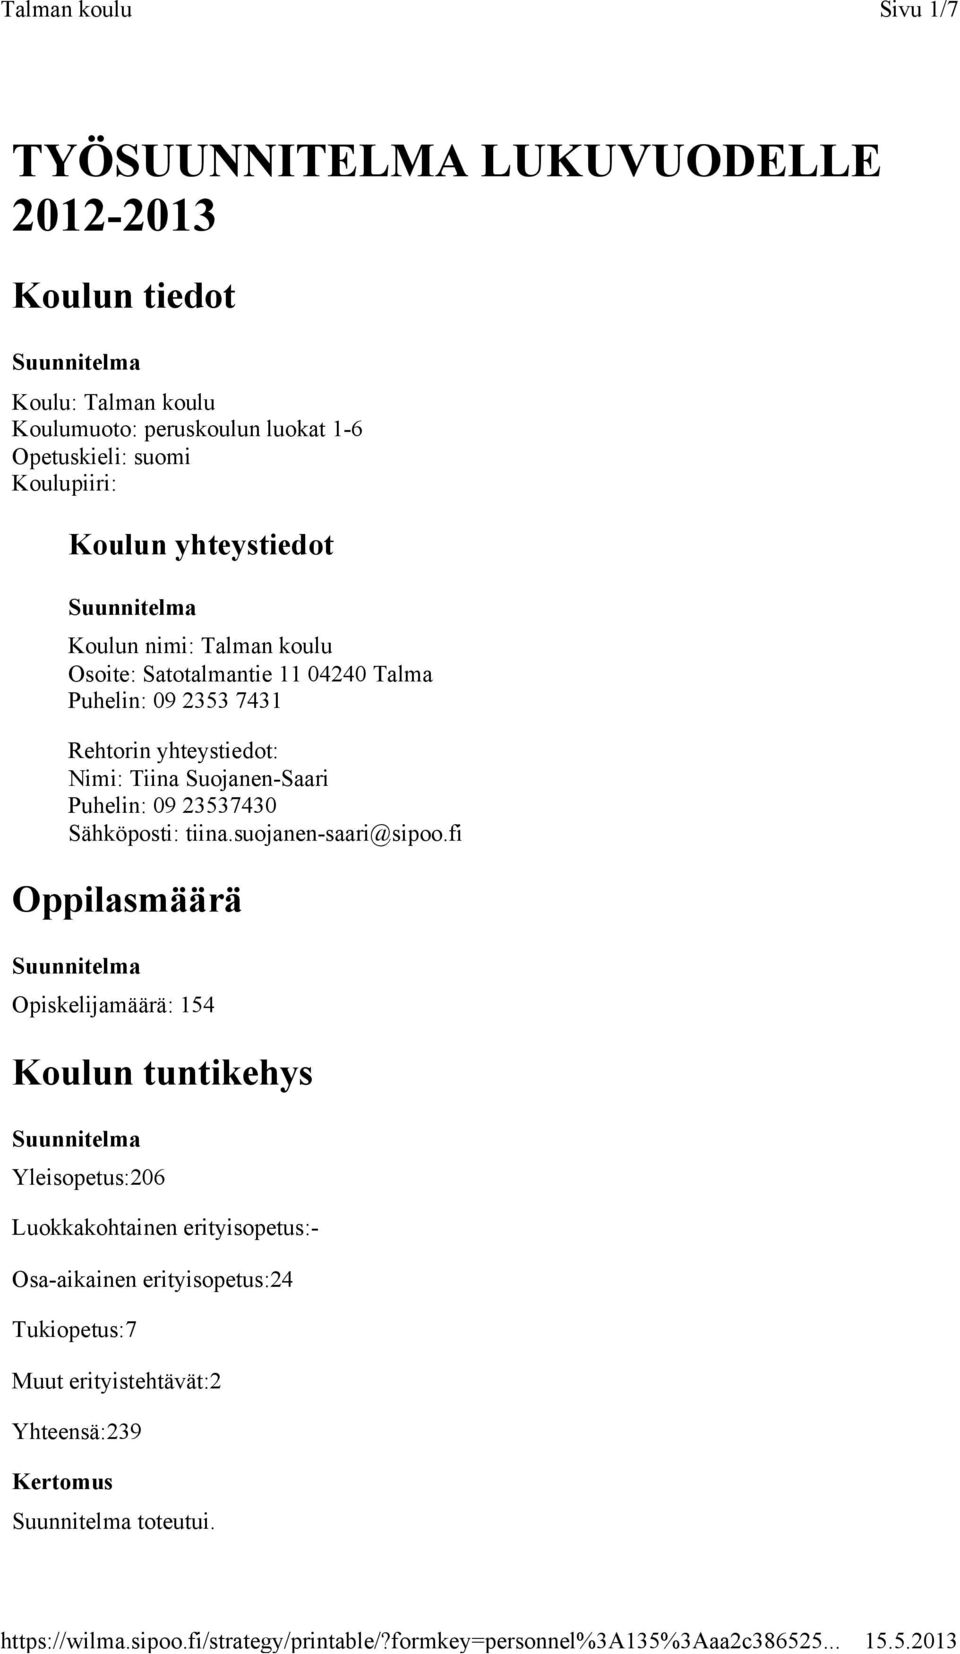 yhteystiedot: Nimi: Tiina Suojanen-Saari Puhelin: 09 23537430 Sähköposti: tiina.suojanen-saari@sipoo.